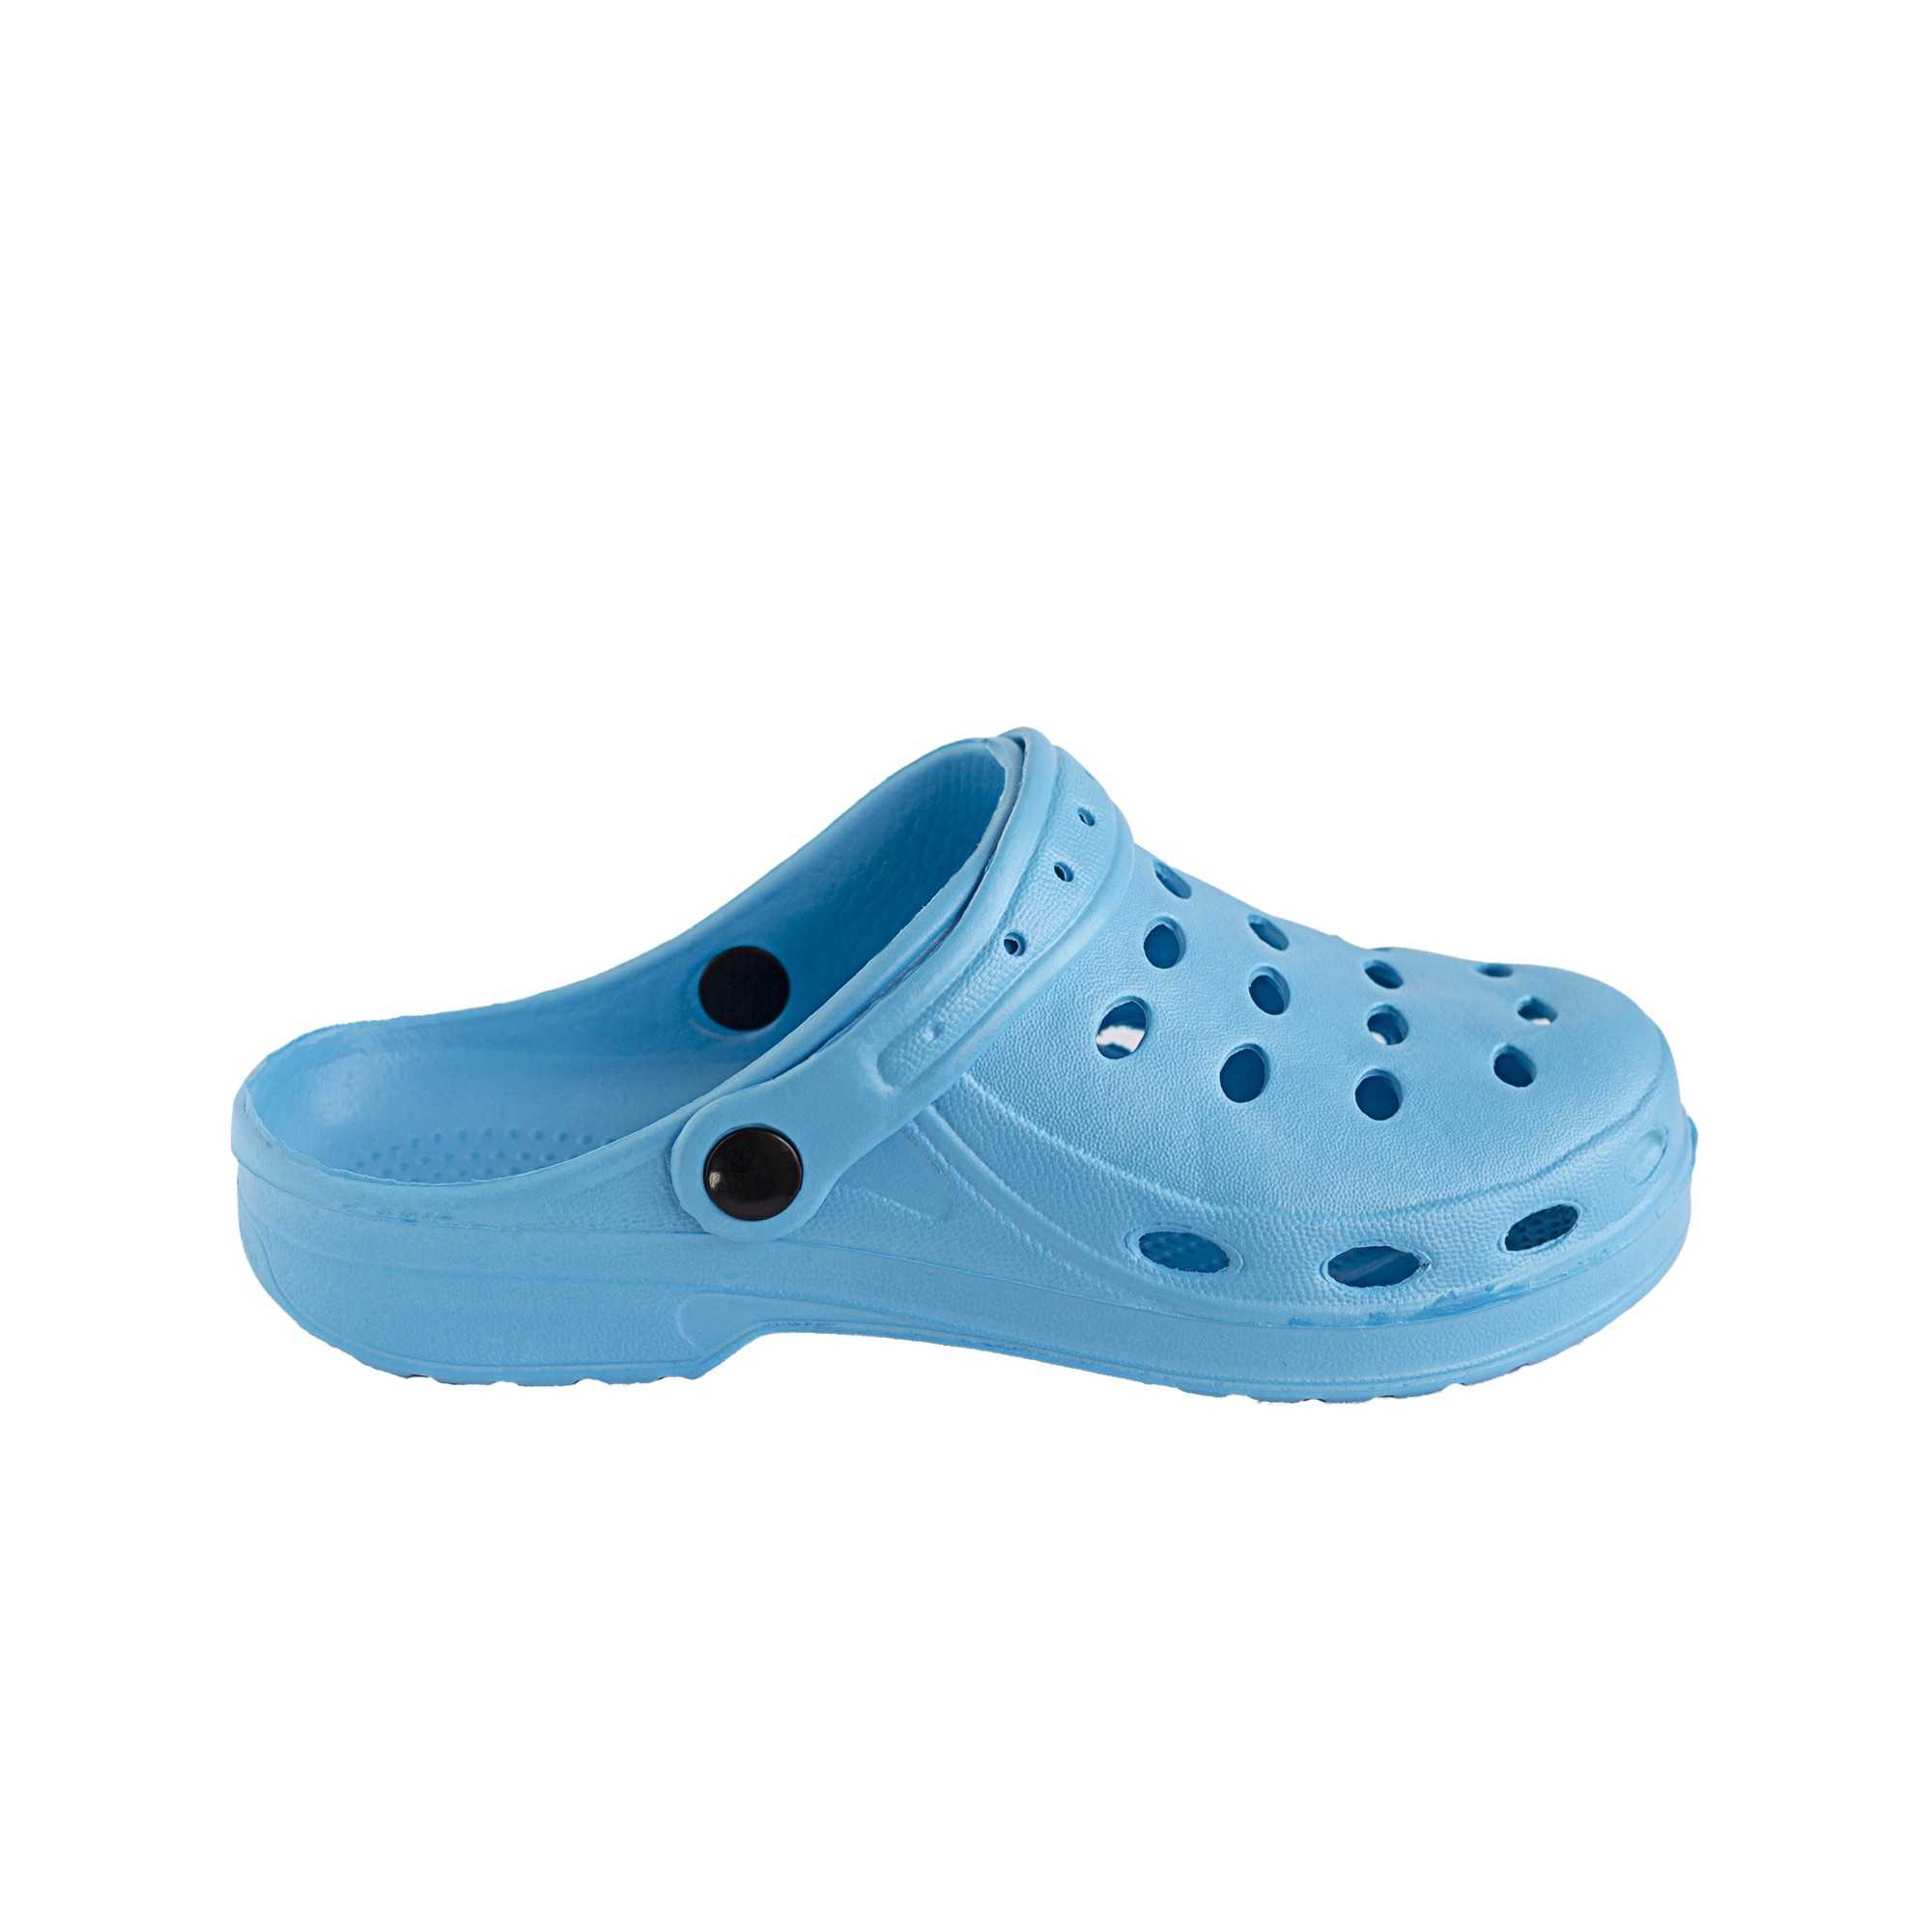 Zuecos Tipo Crocs Adulto Color Azul Celeste | Comprar Zuecos Online